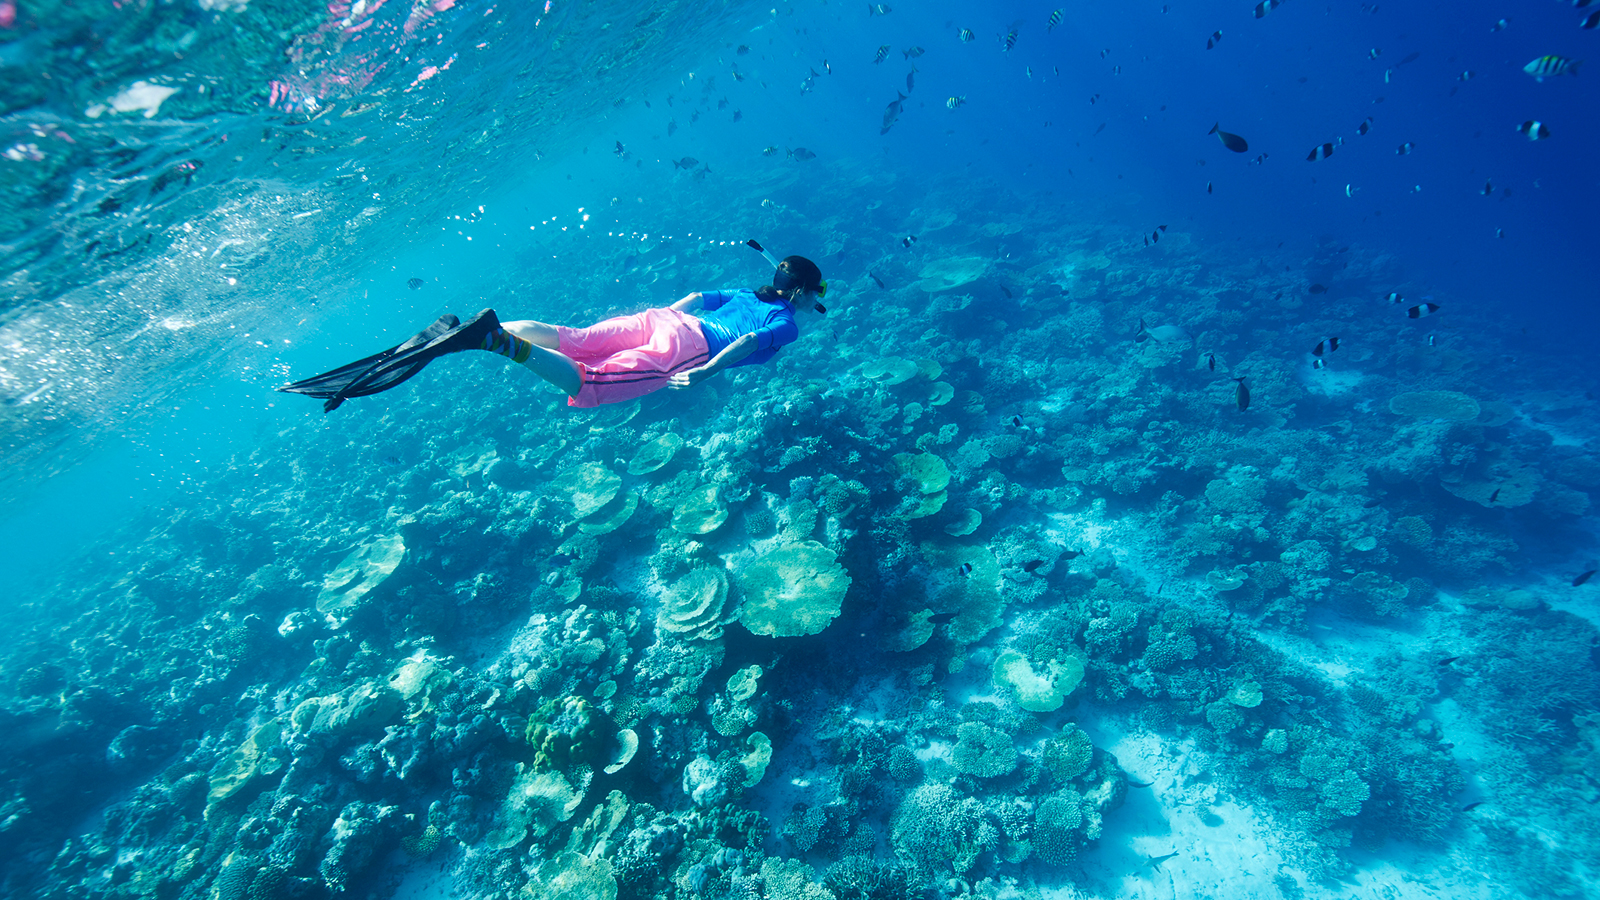 الرياضات البحرية جزء من السياحة لمن يحبون الغوص في المحيط الهندي (غيتي إيميجز)